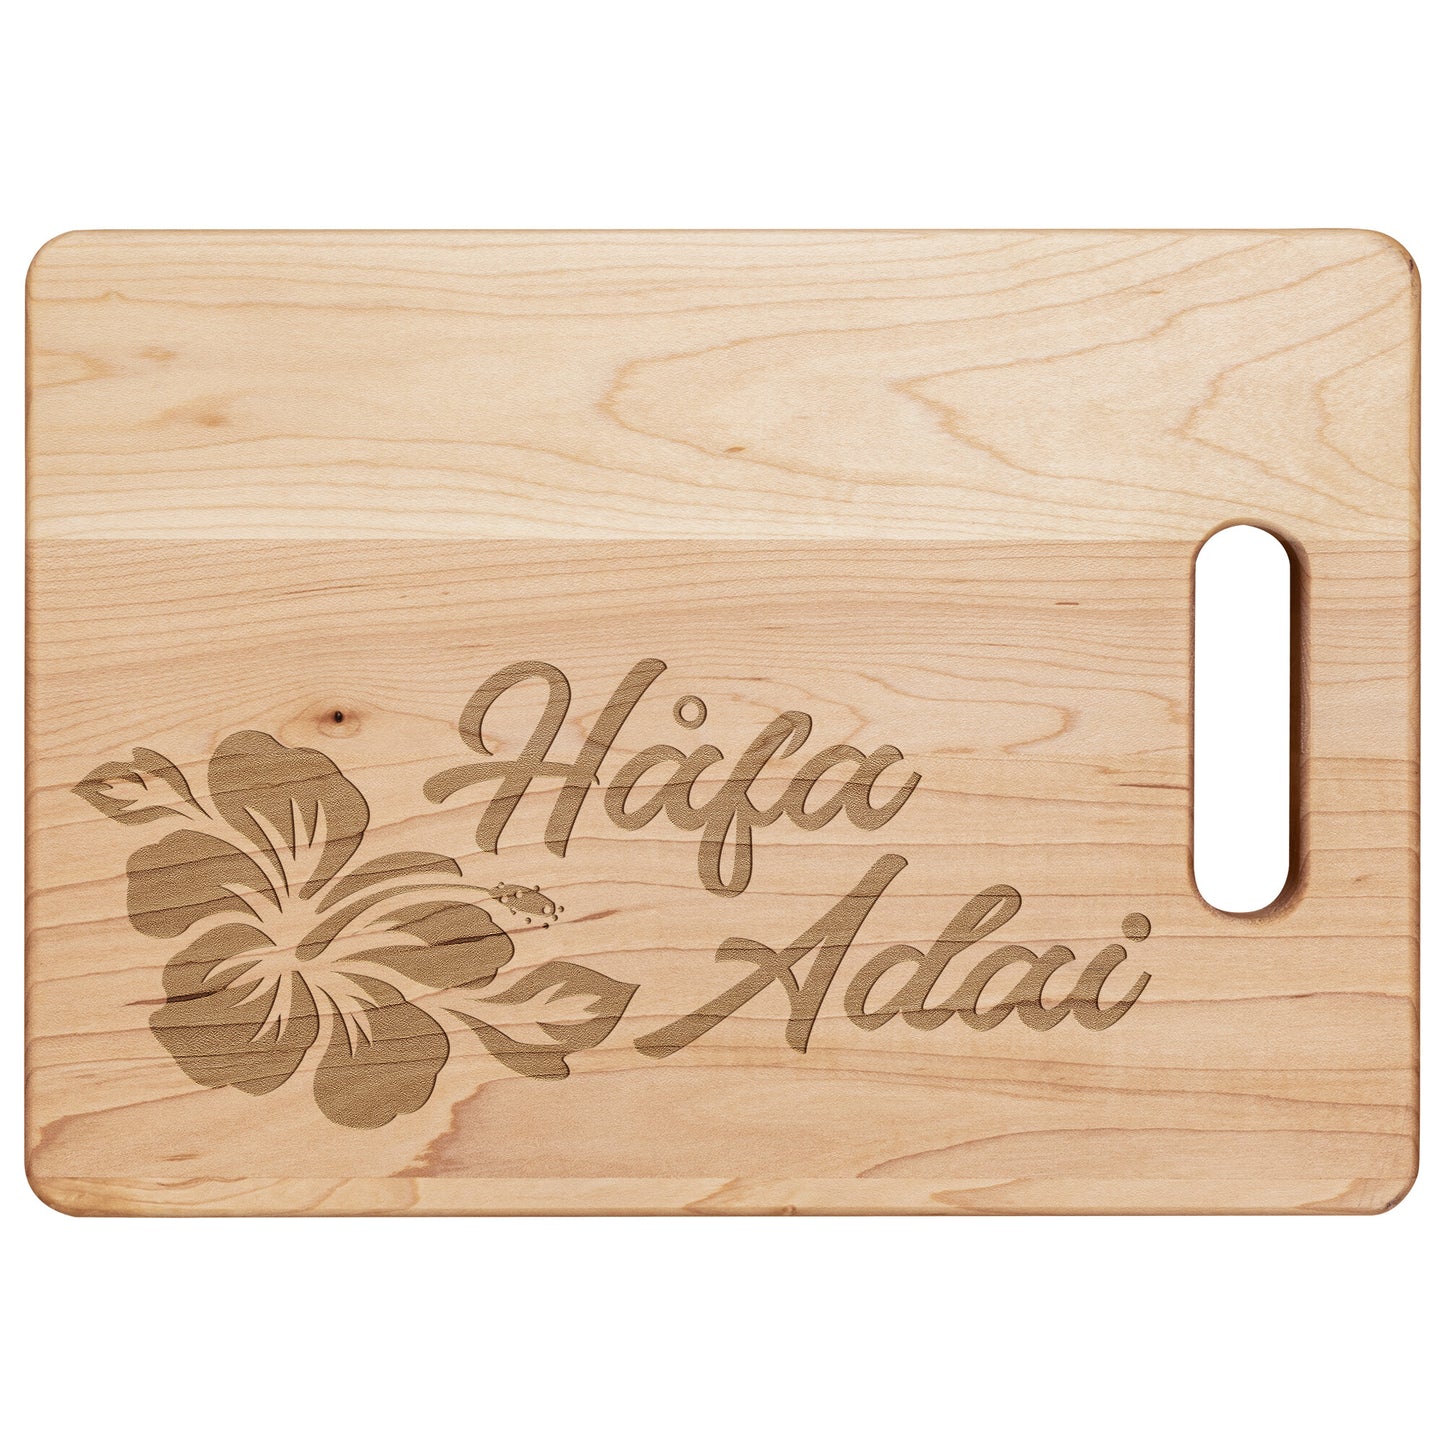 Hafa Adai Guam CNMI Hibiscus Maple Cutting Board